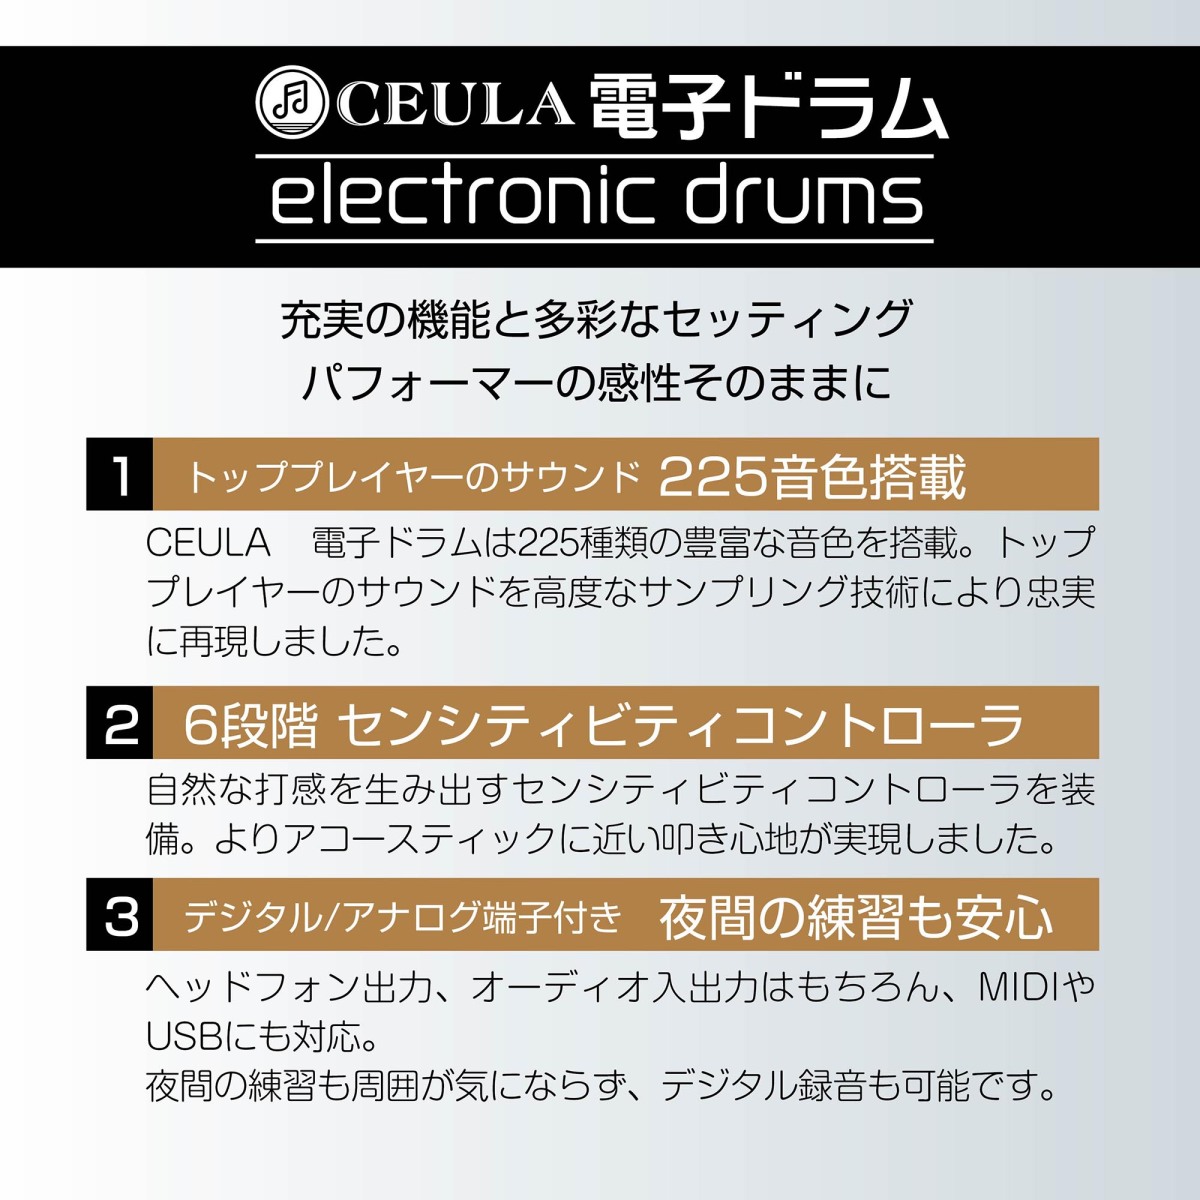 CEULA электронная ударная установка compact 5 барабан 3sin Pal специальный коврик есть складной USB MIDI функция стул имеется японский язык инструкция [PSE засвидетельствование settled ][ 12 месяцев гарантия ]